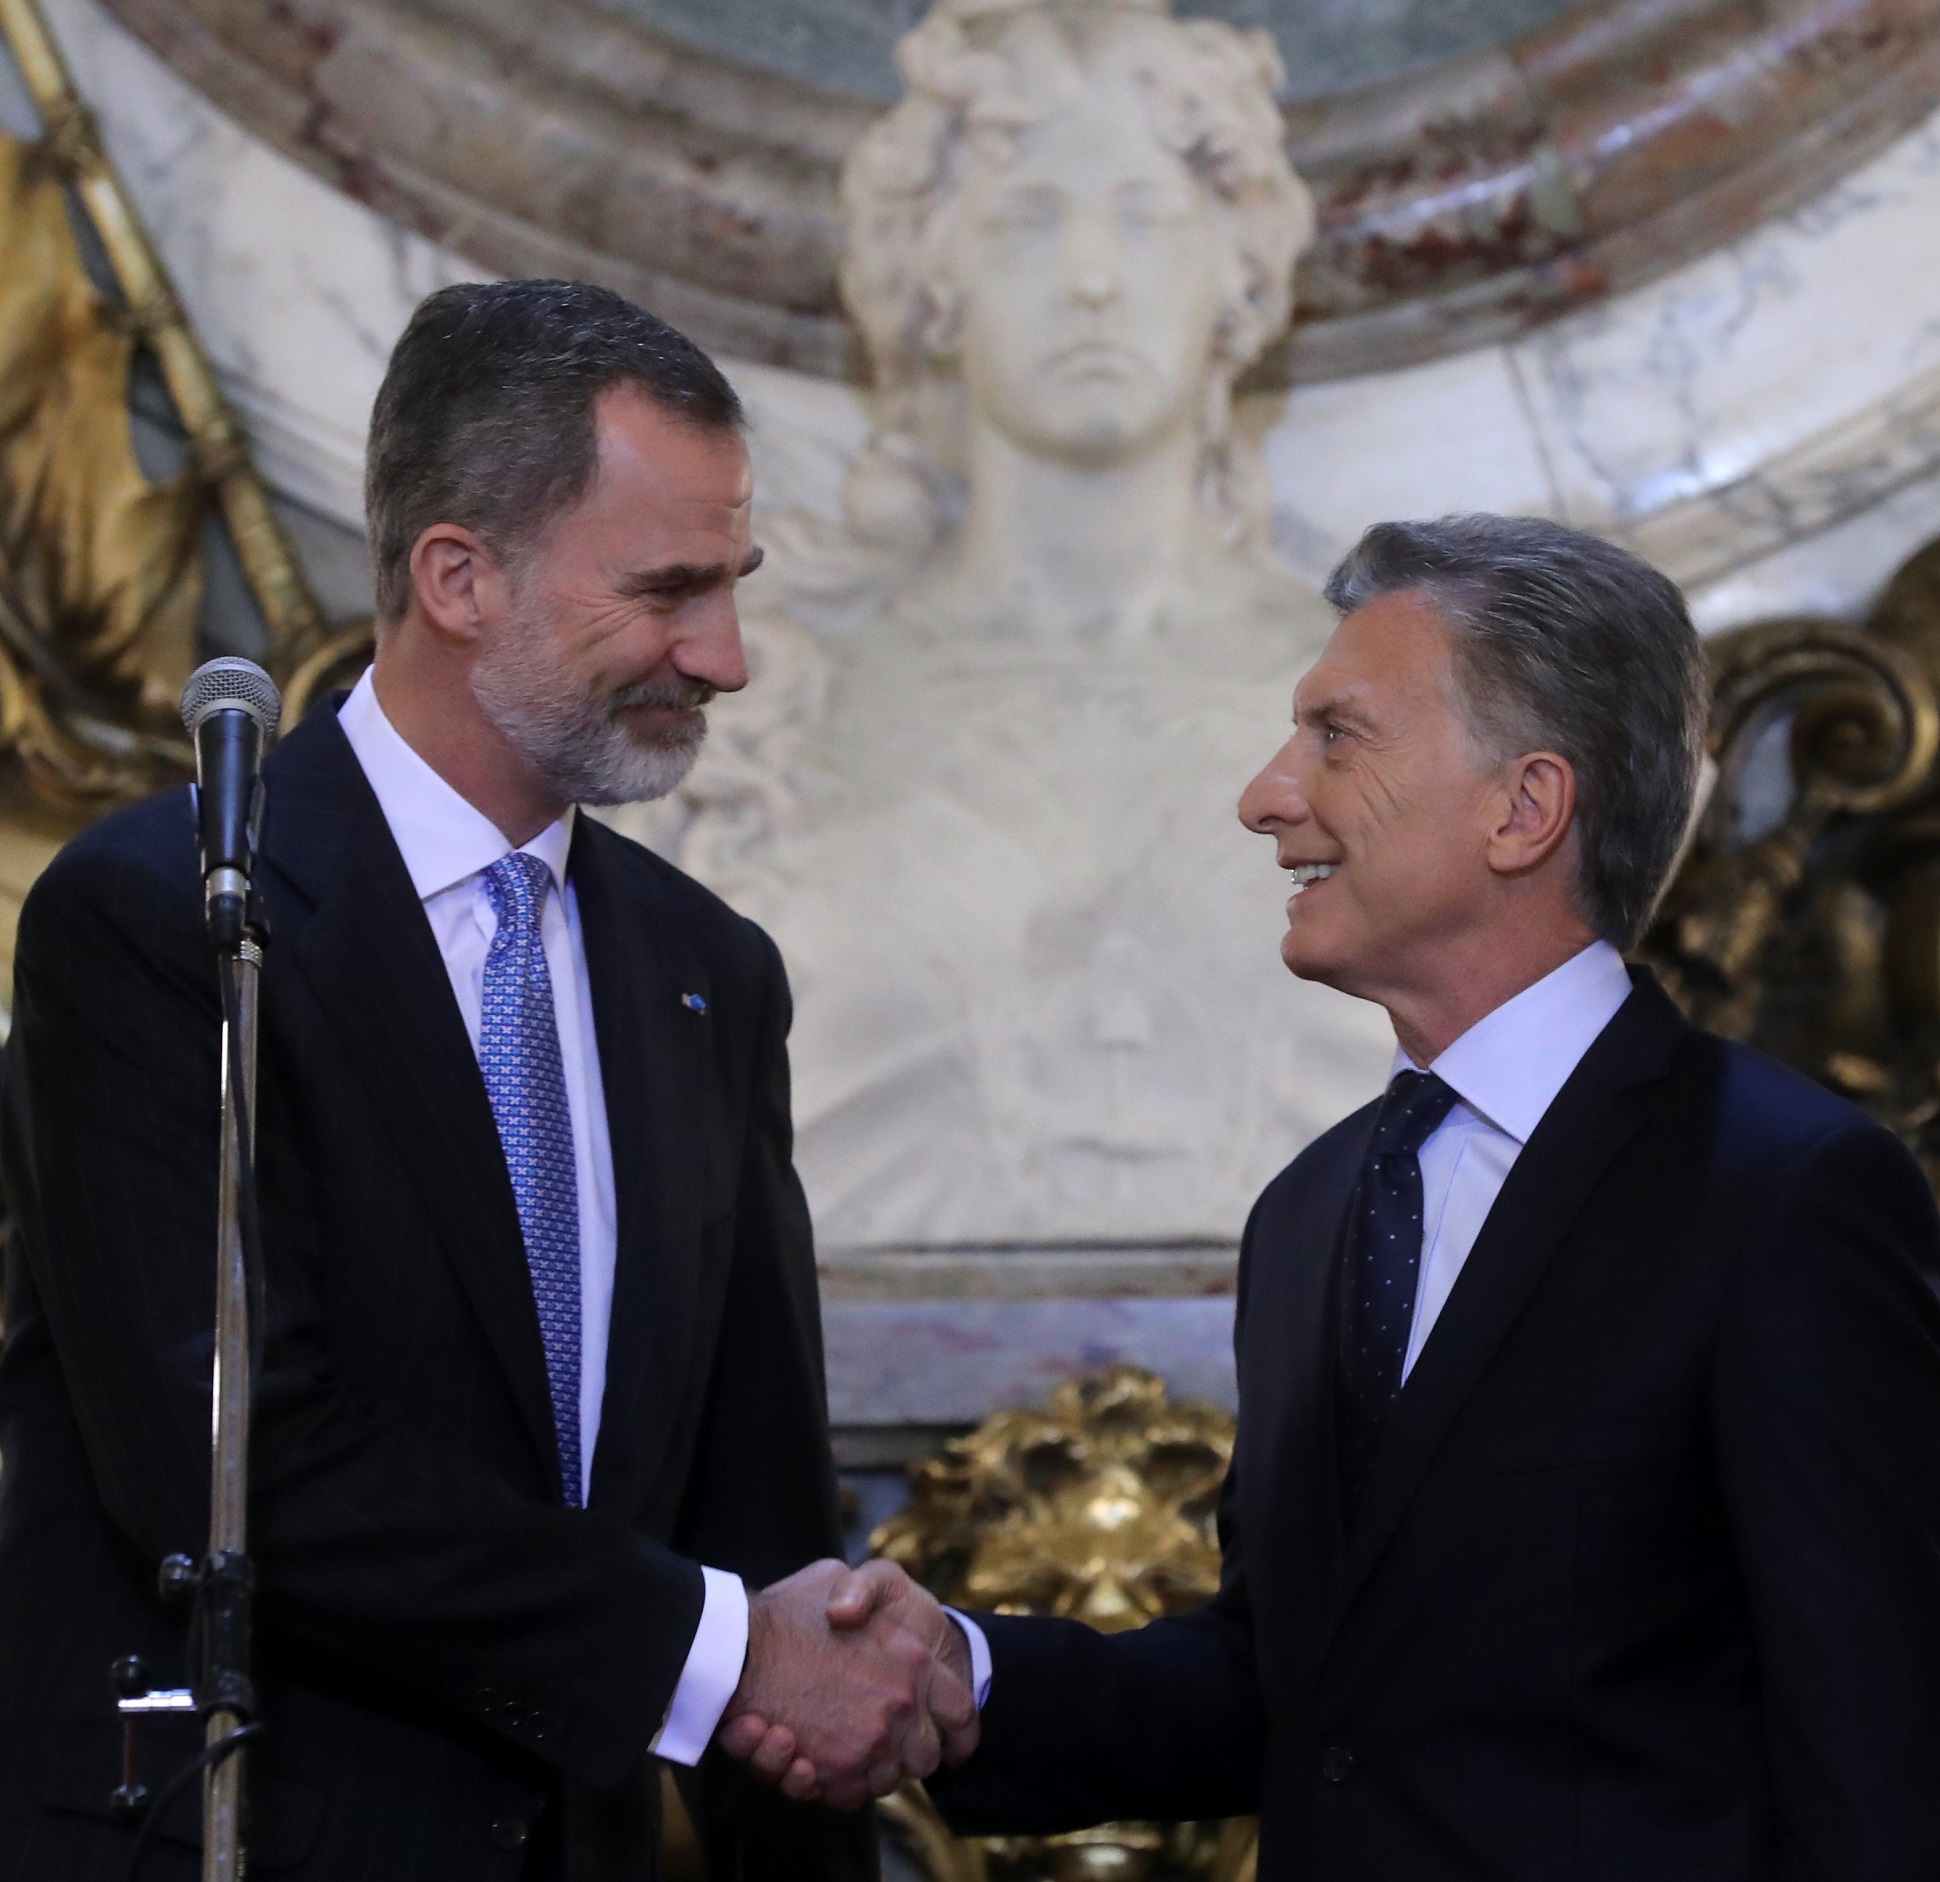 El presidente Macri recibió a los Reyes de España